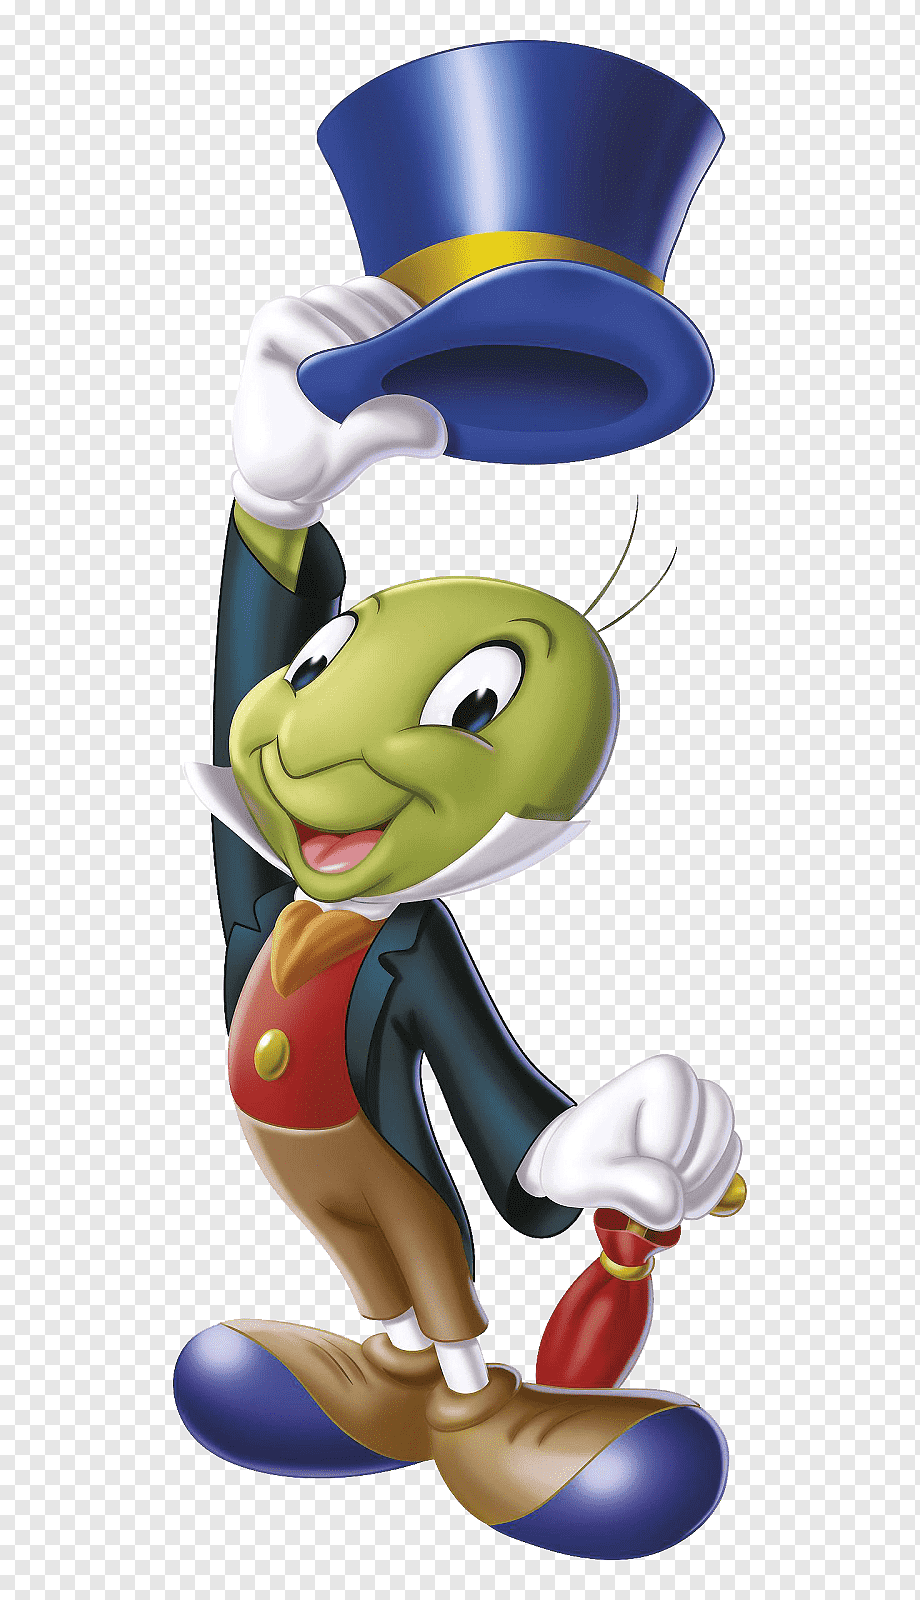 Jimmy Cricket, Jiminy Cricket The Talking Crickett The Adventures of Pinocchio T